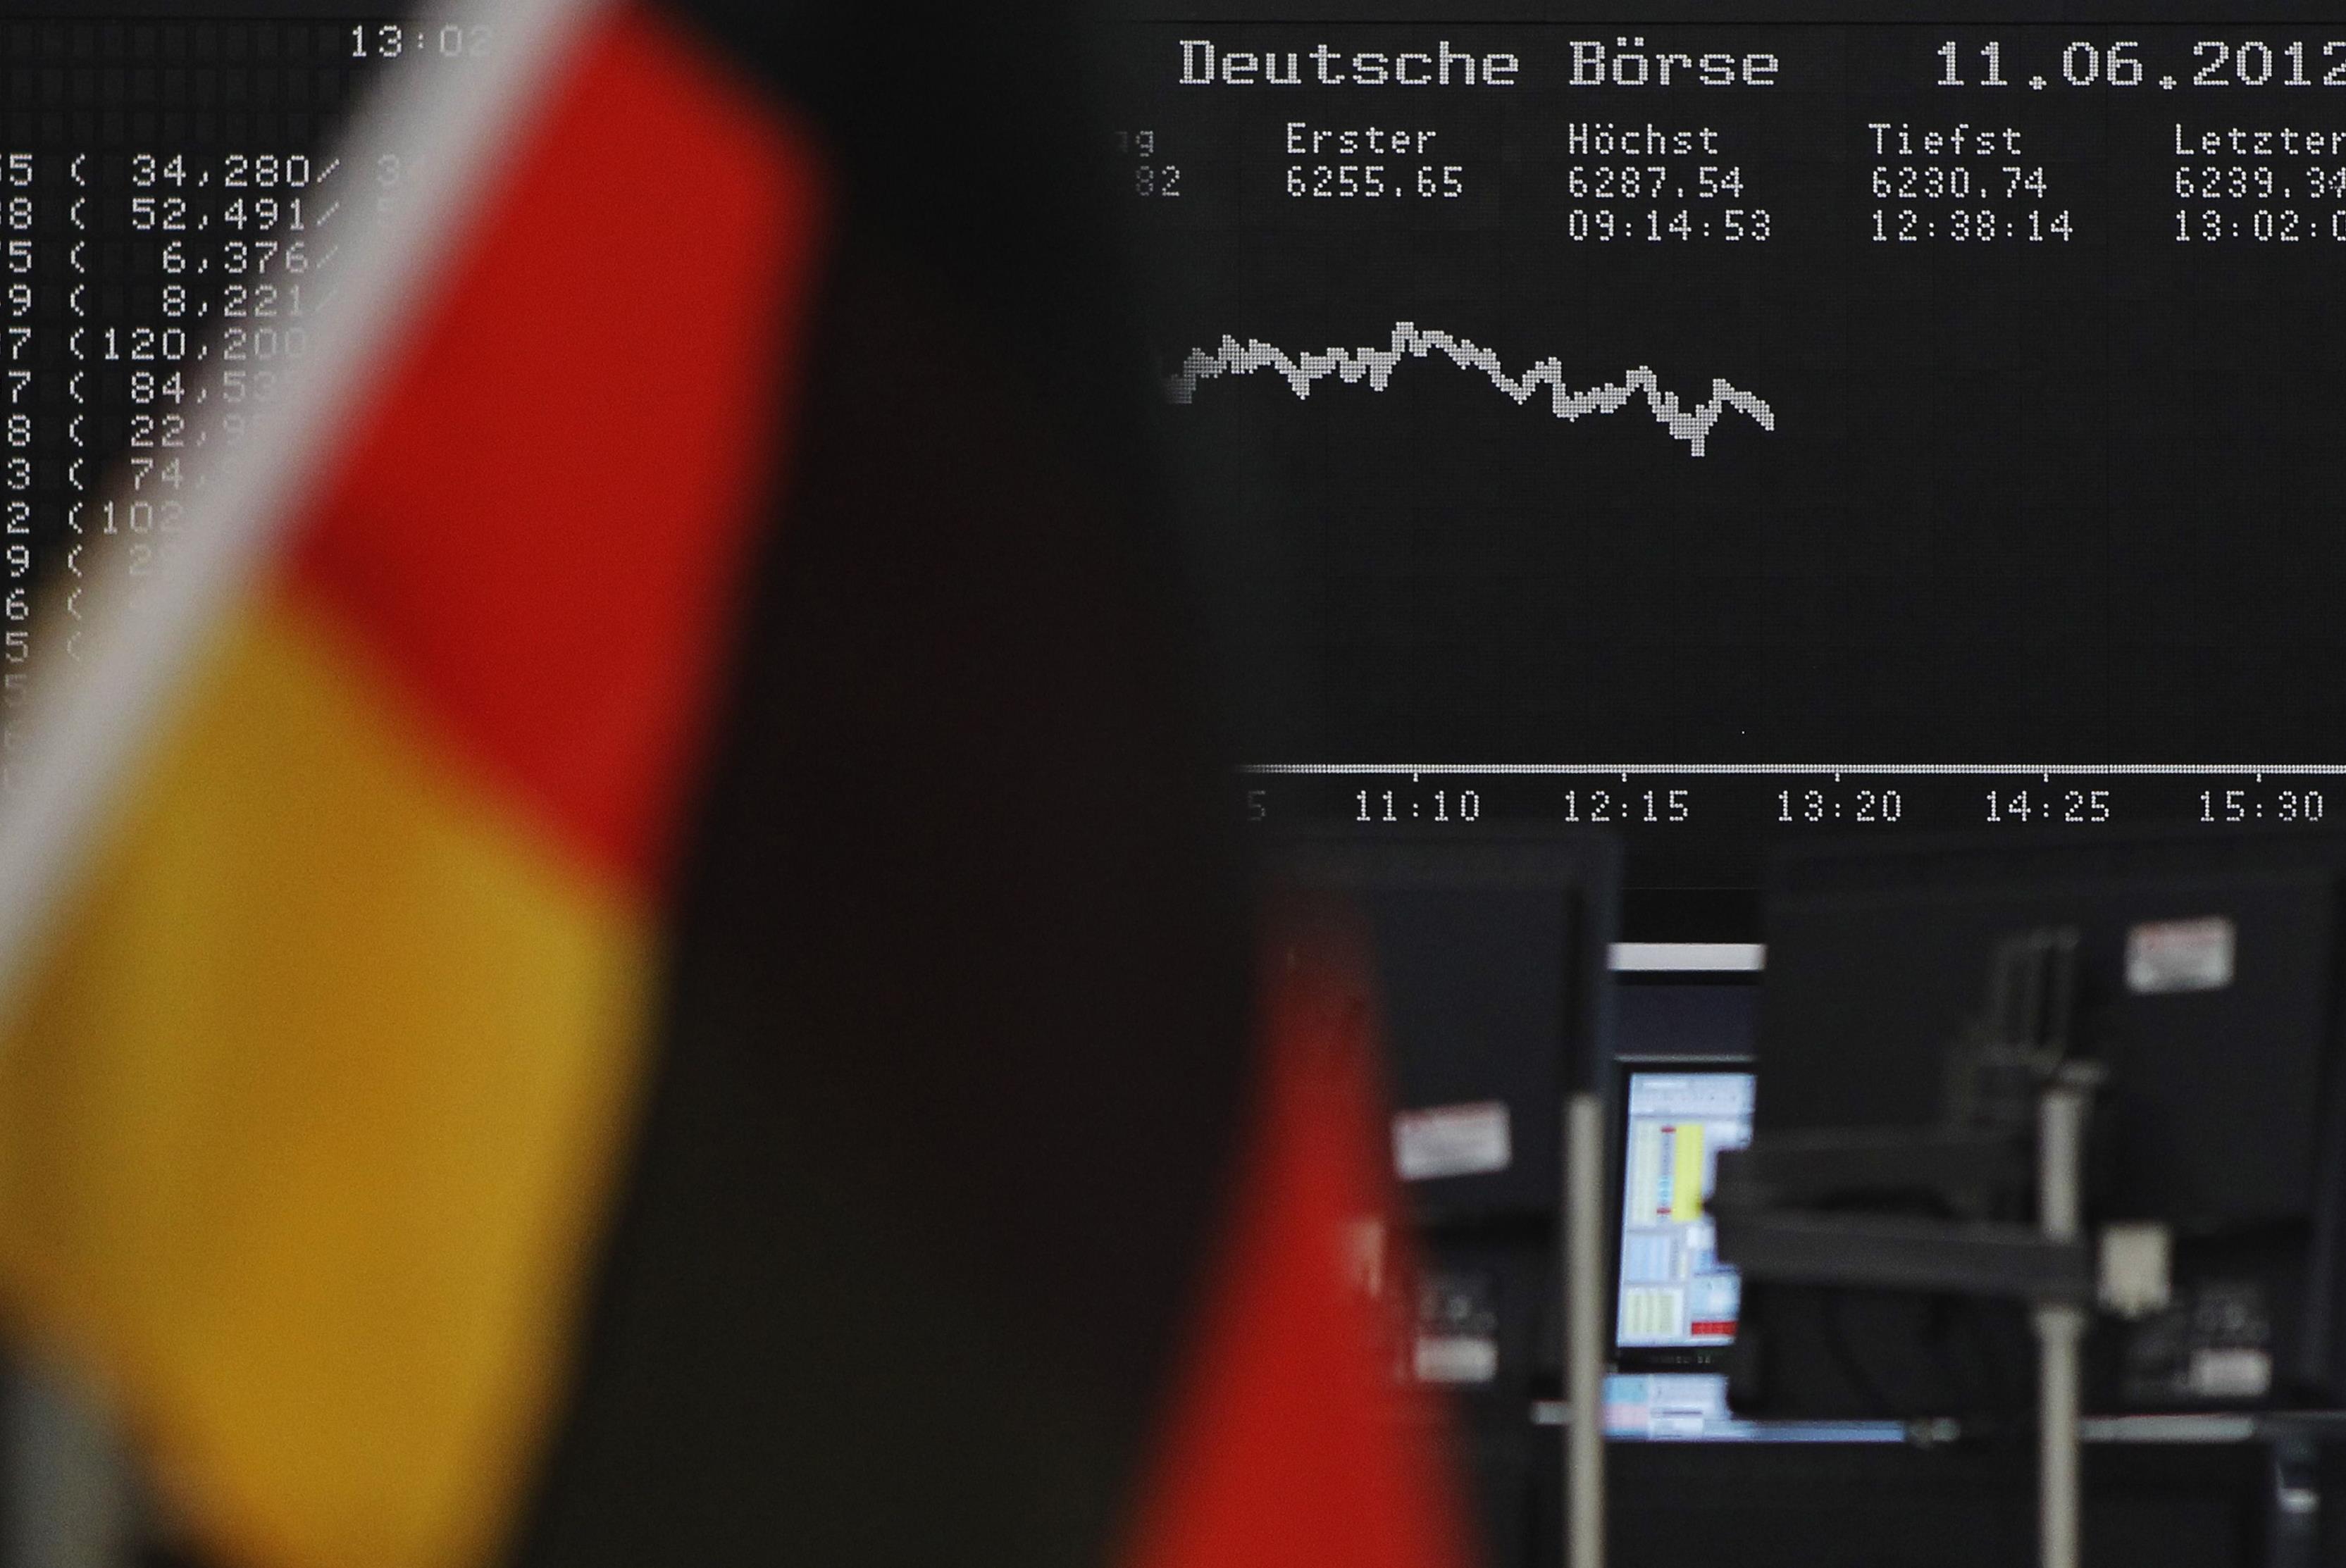 Περιορισμό του QE και μεταρρυθμίσεις ζητά η επιτροπή σοφών της Γερμανίας